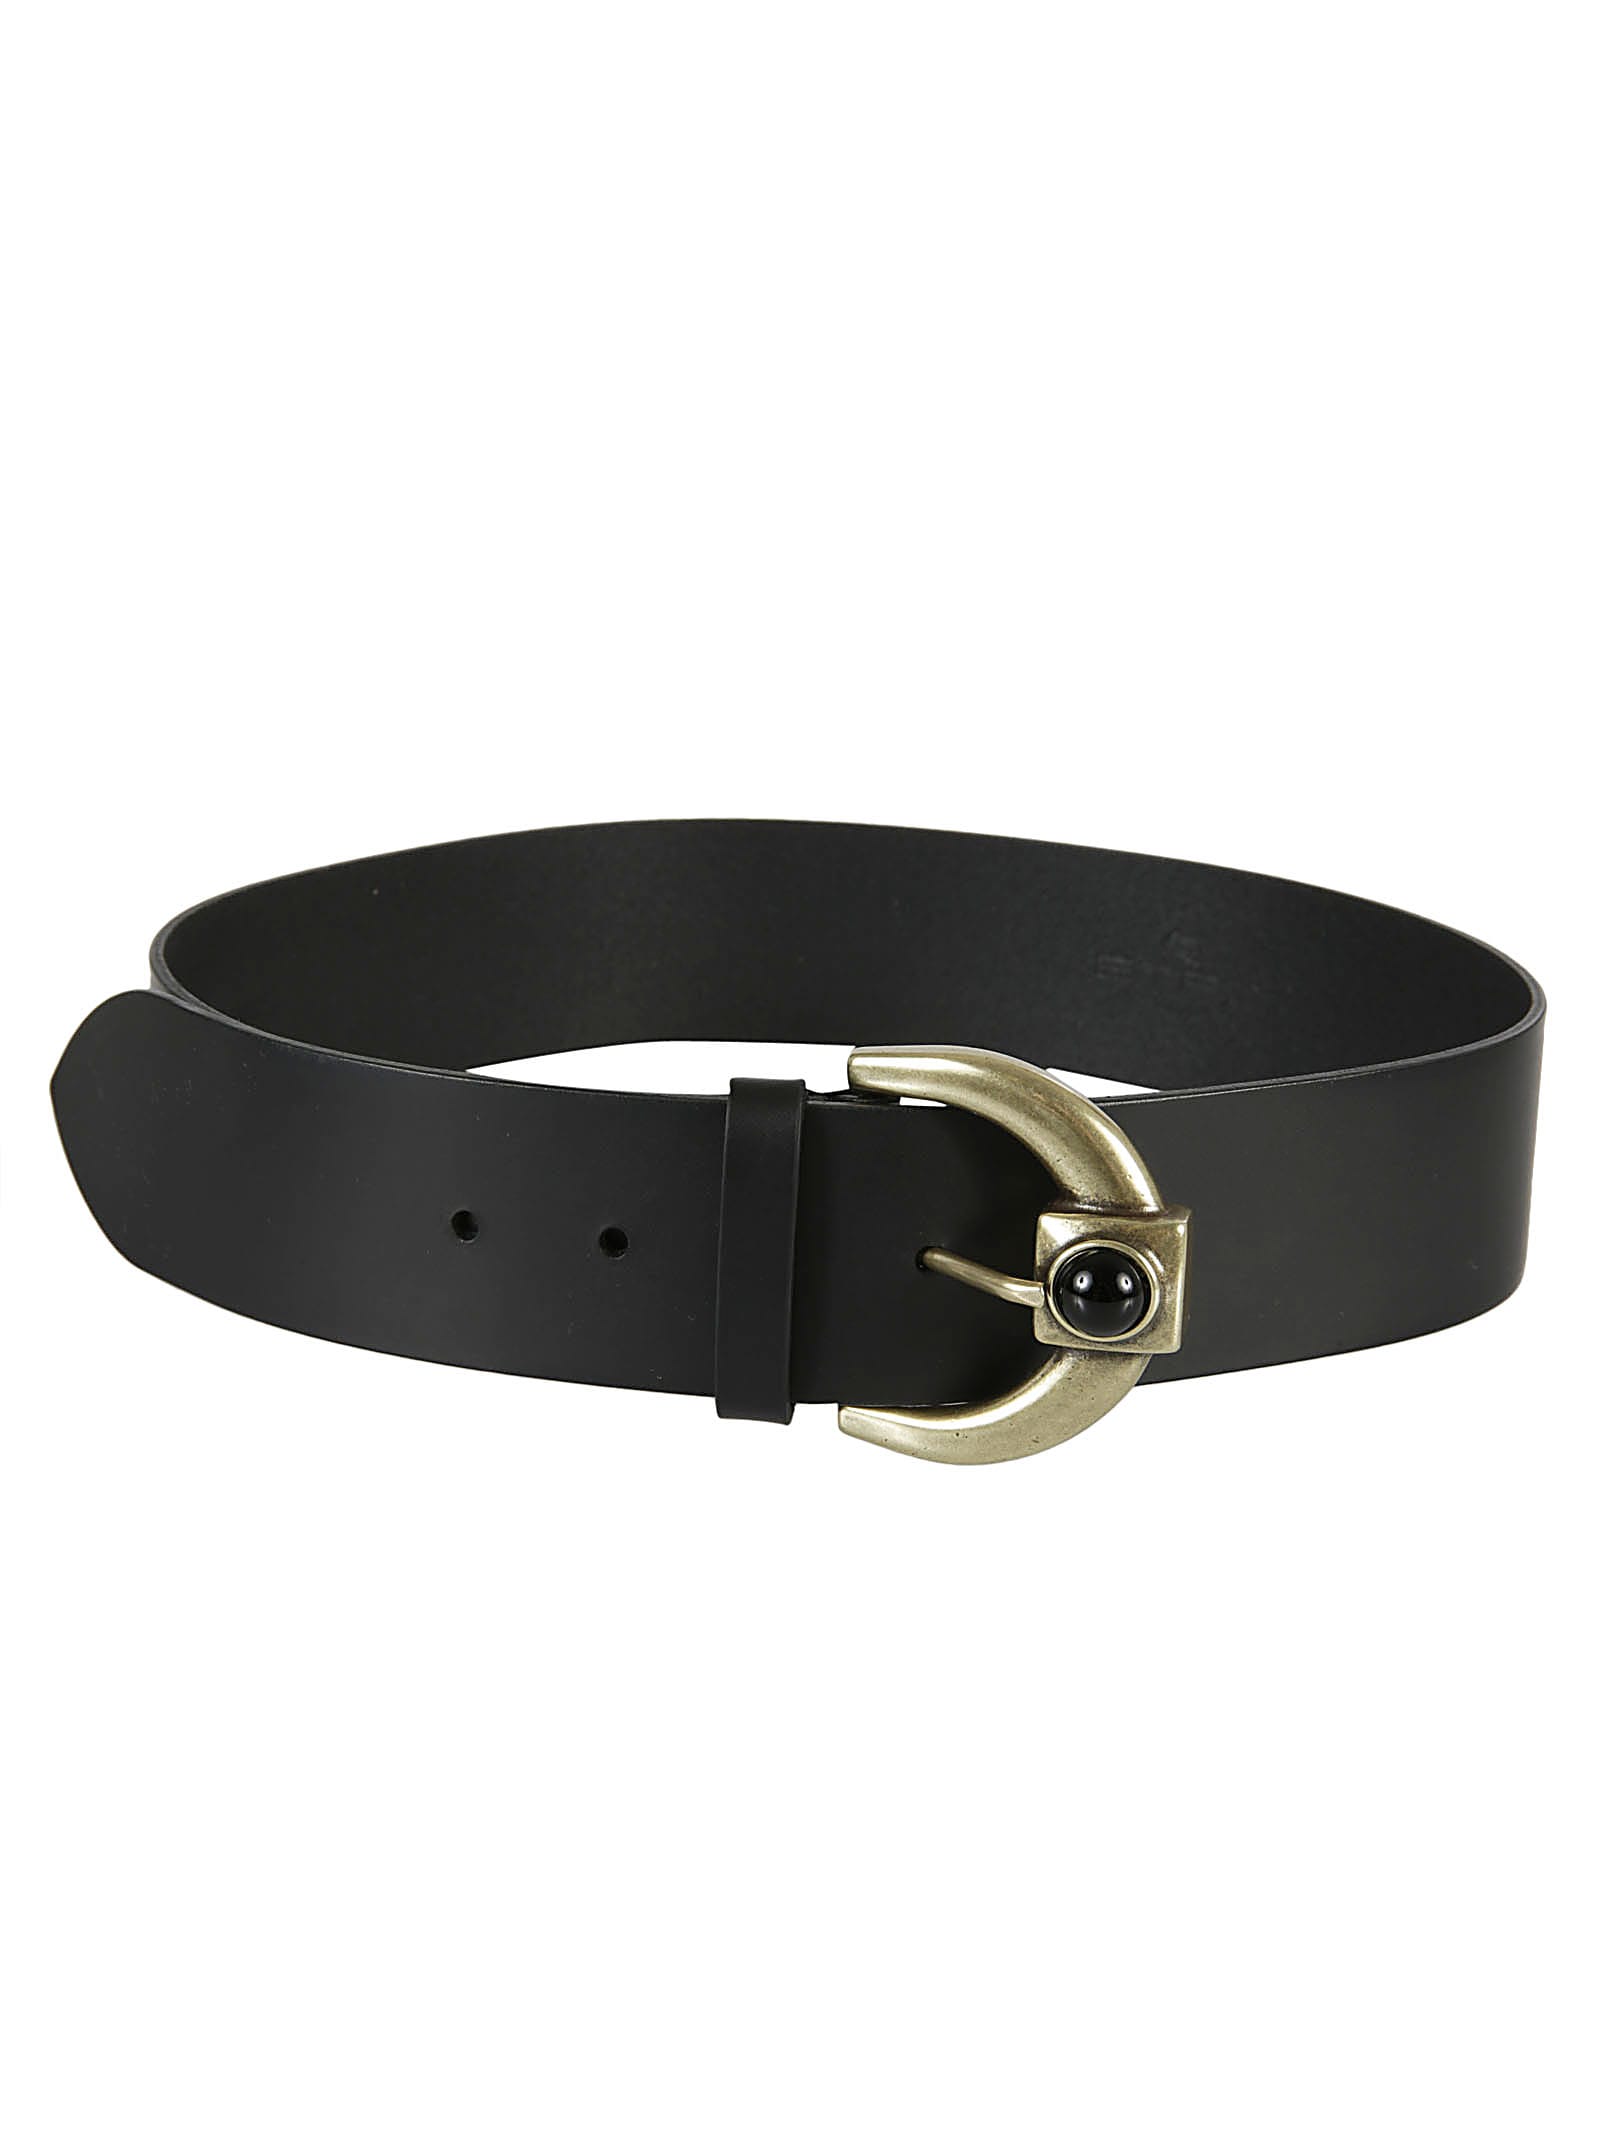 ETRO Belts for Women | ModeSens